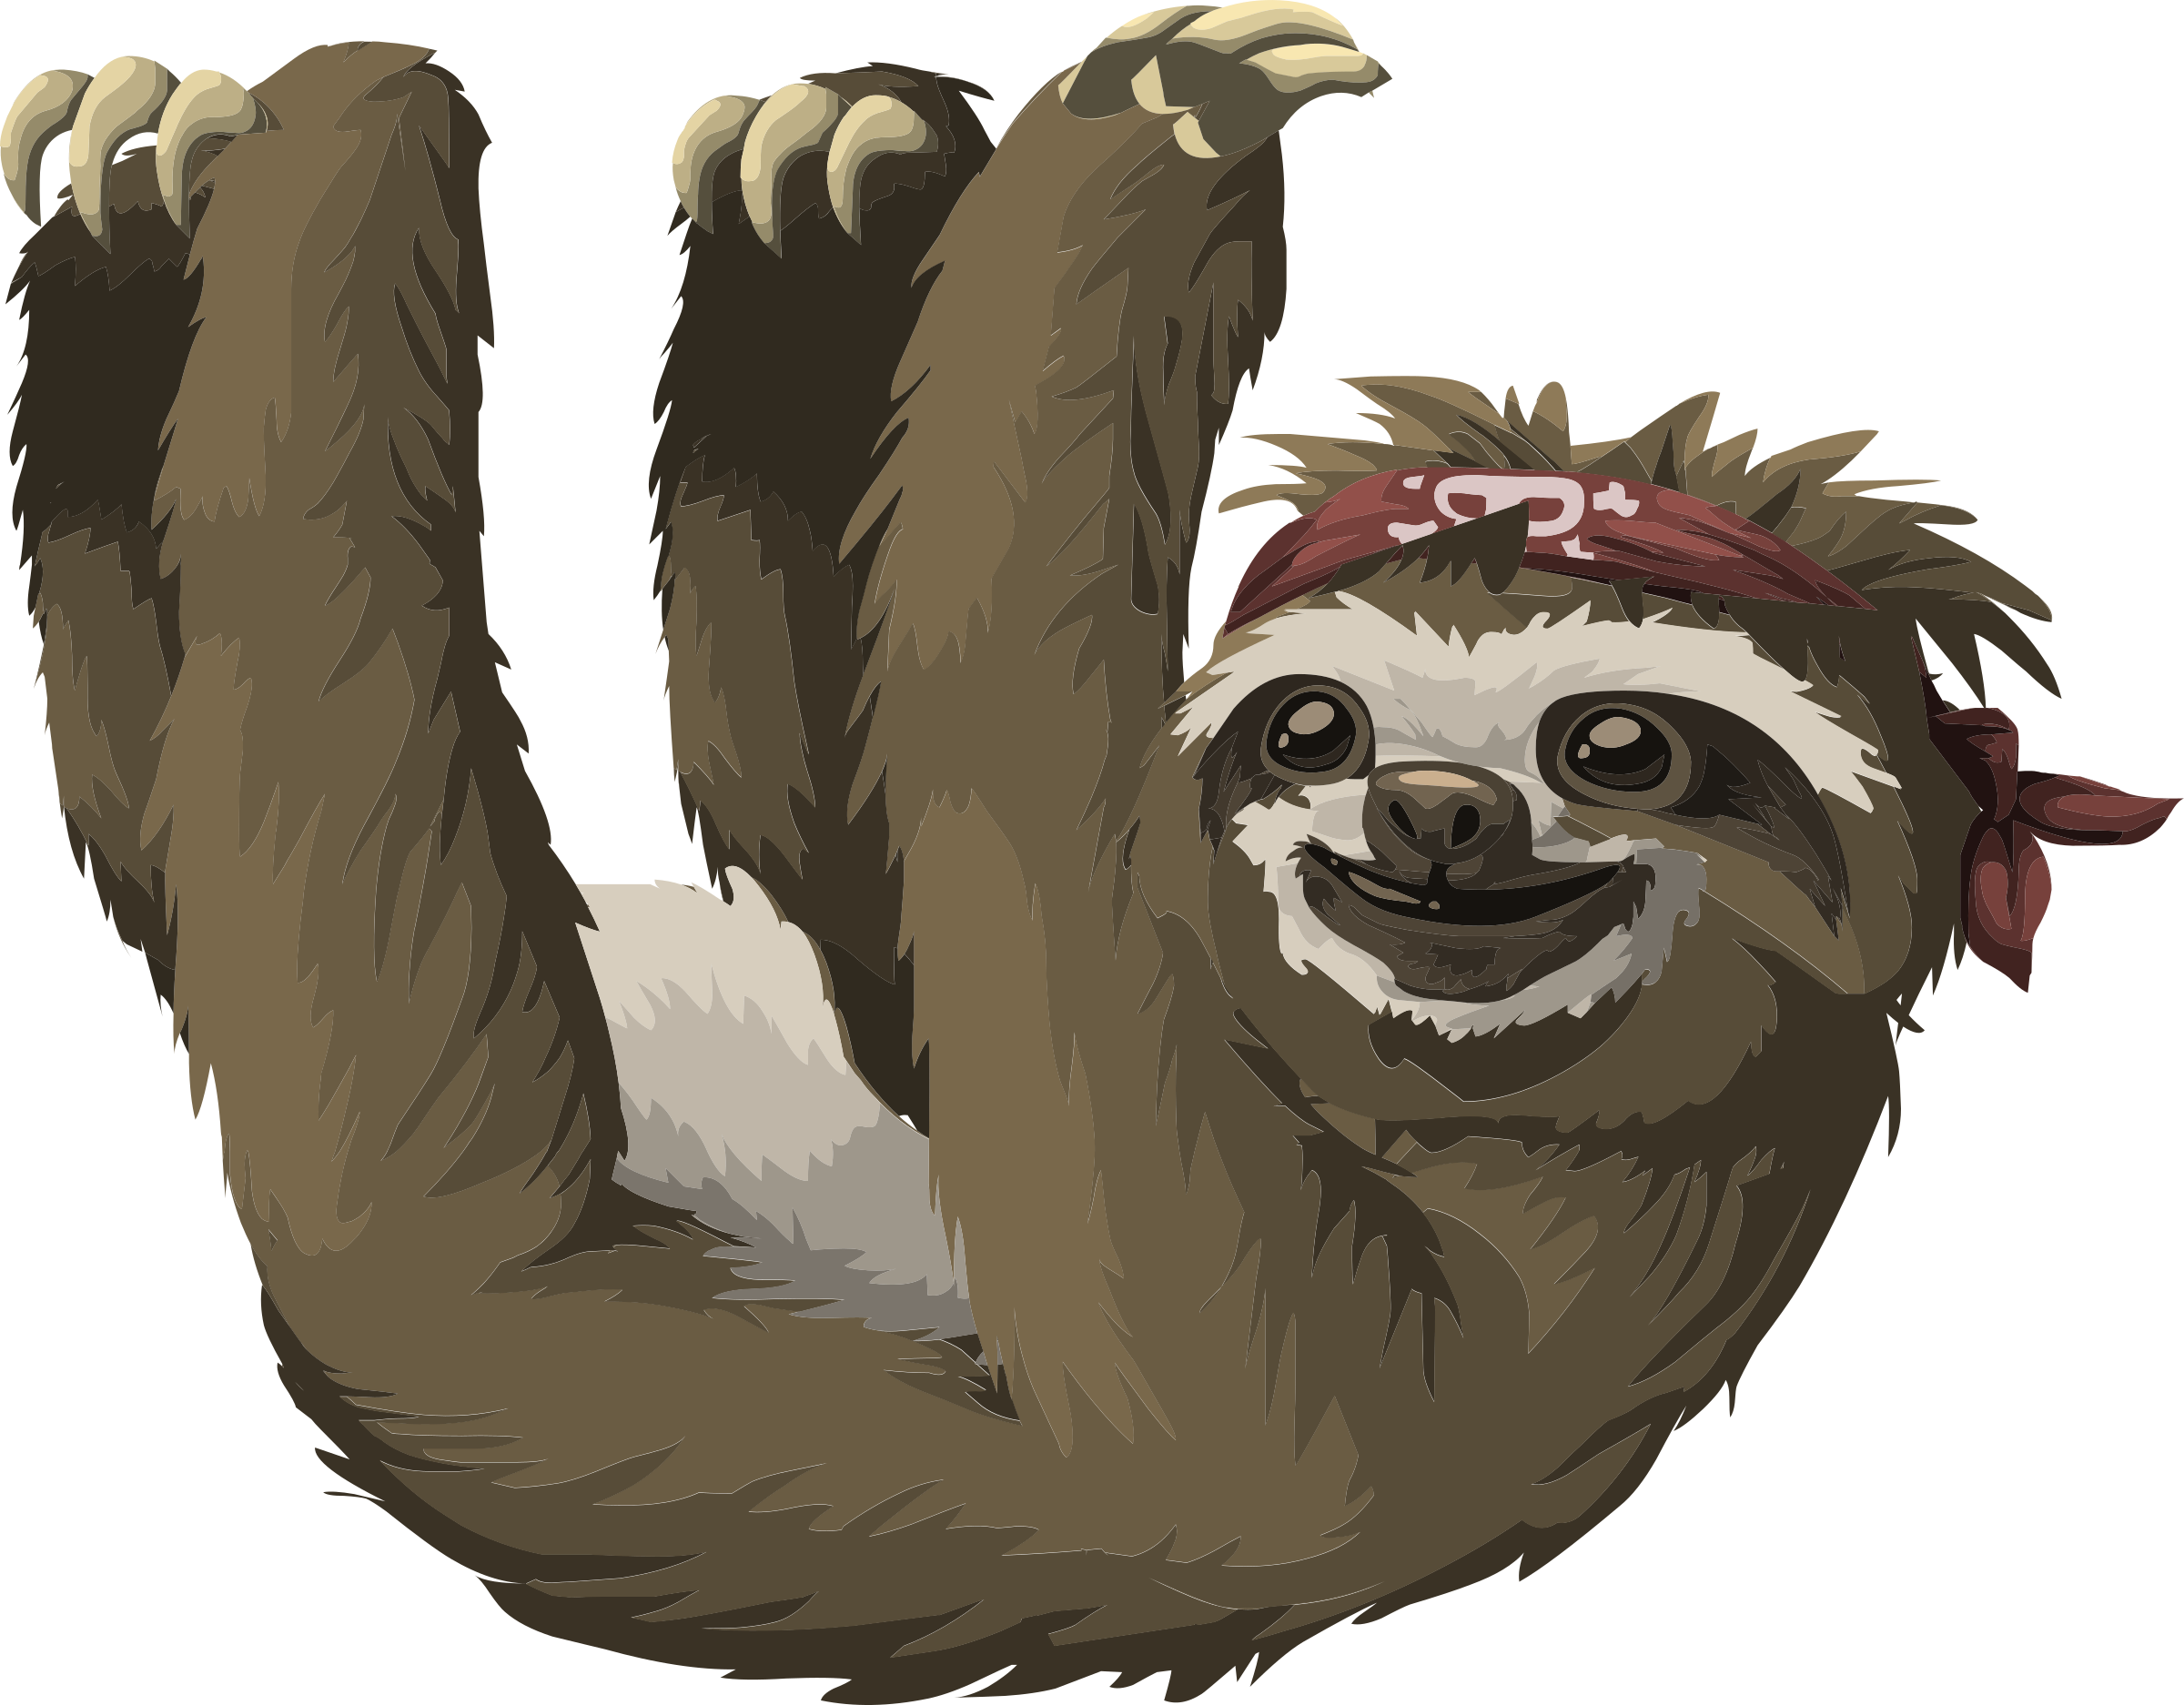 Cute Sloth Drawing Image